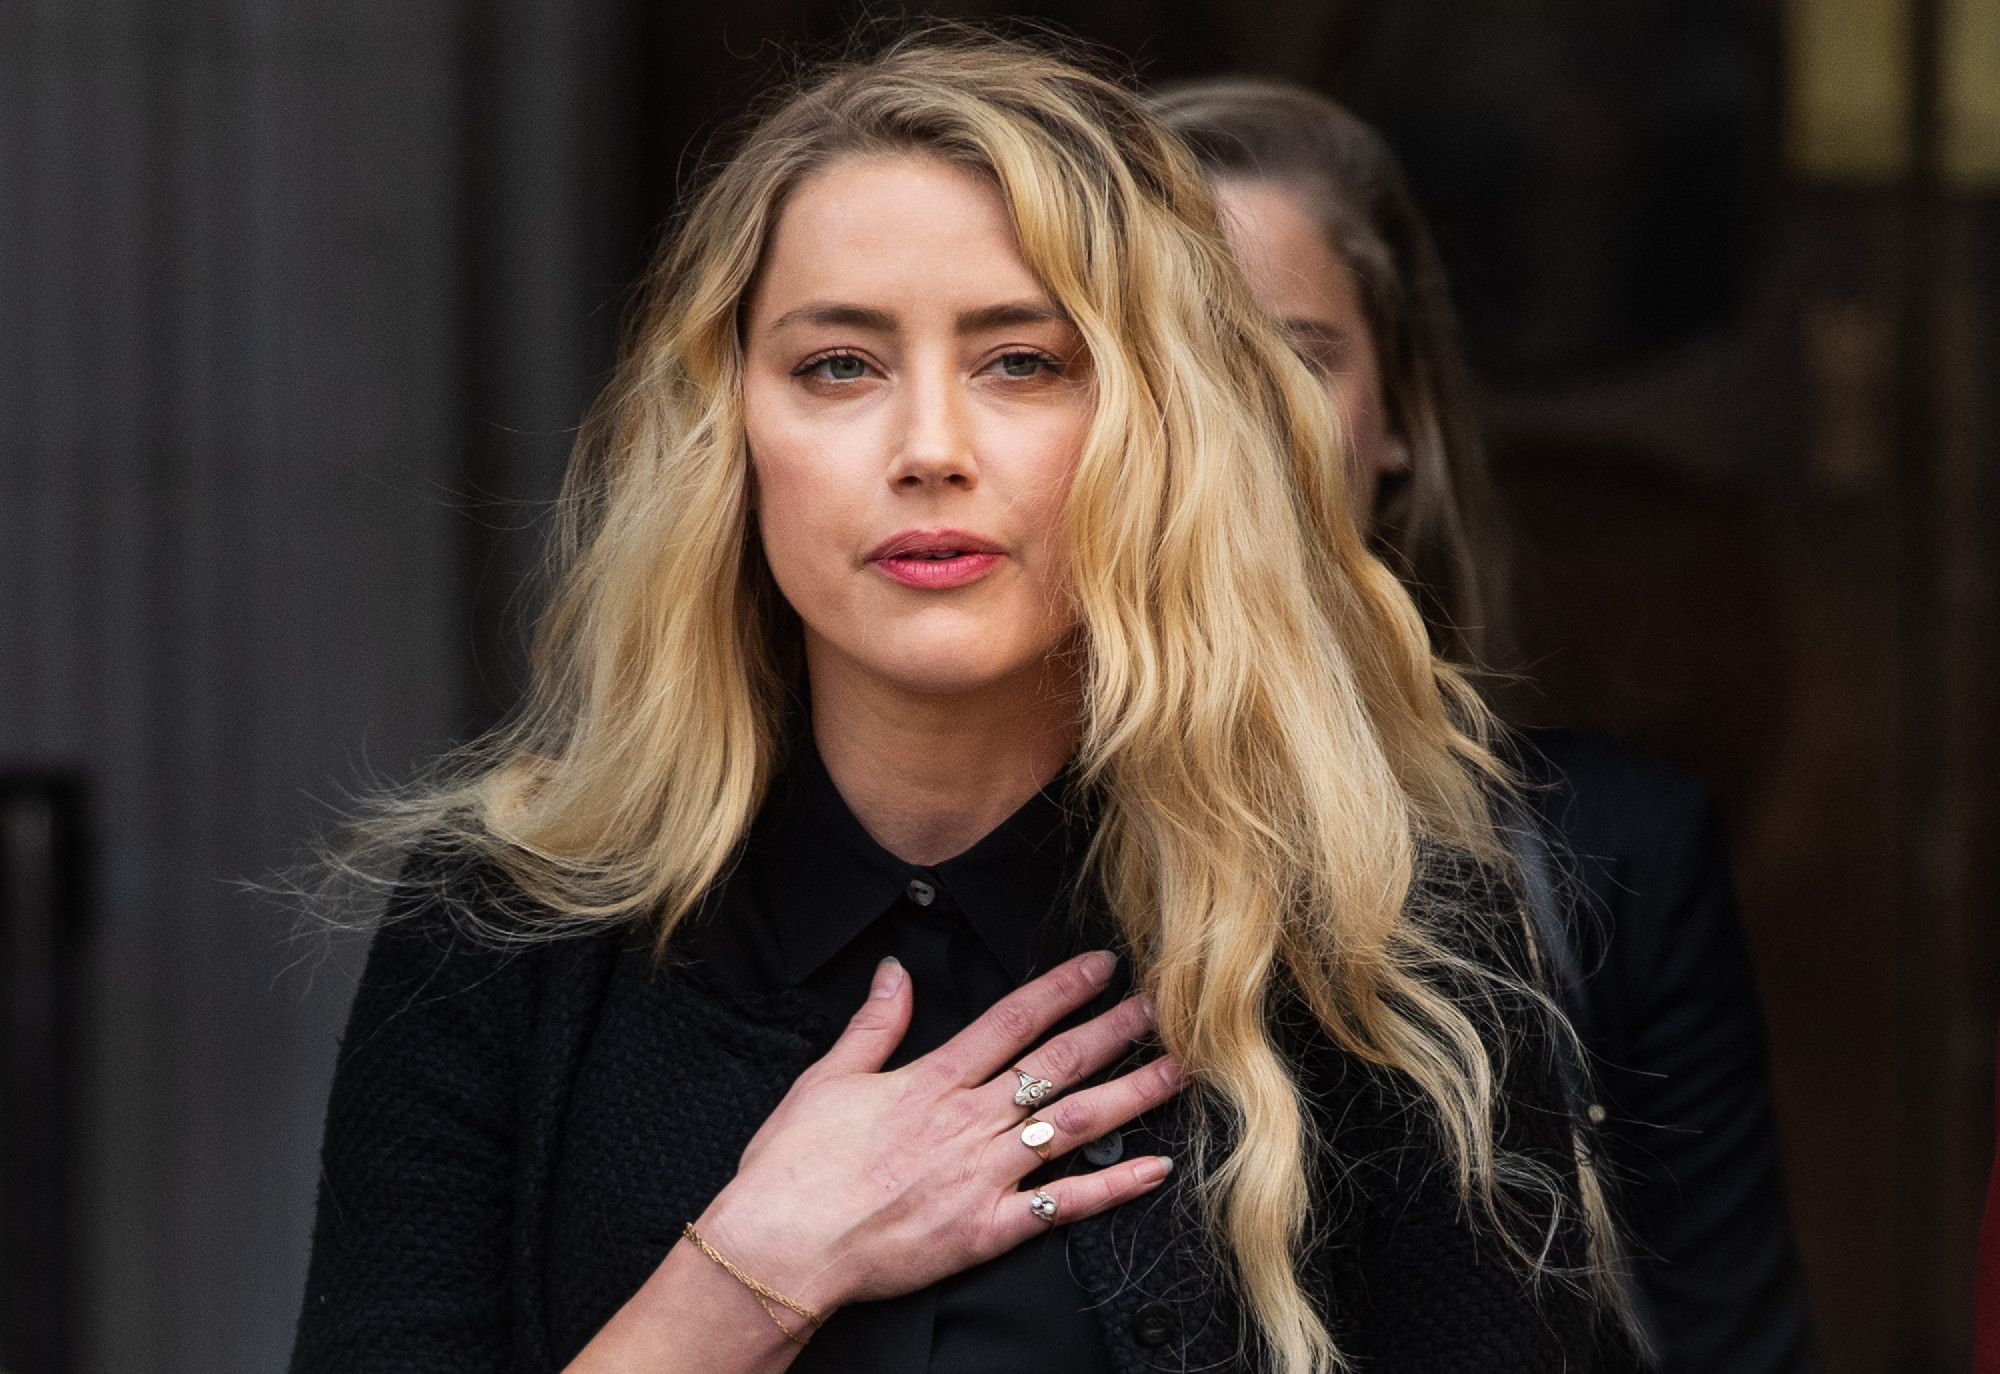 Egy vizsgálat szerint Amber Heard a világ legszebb nője